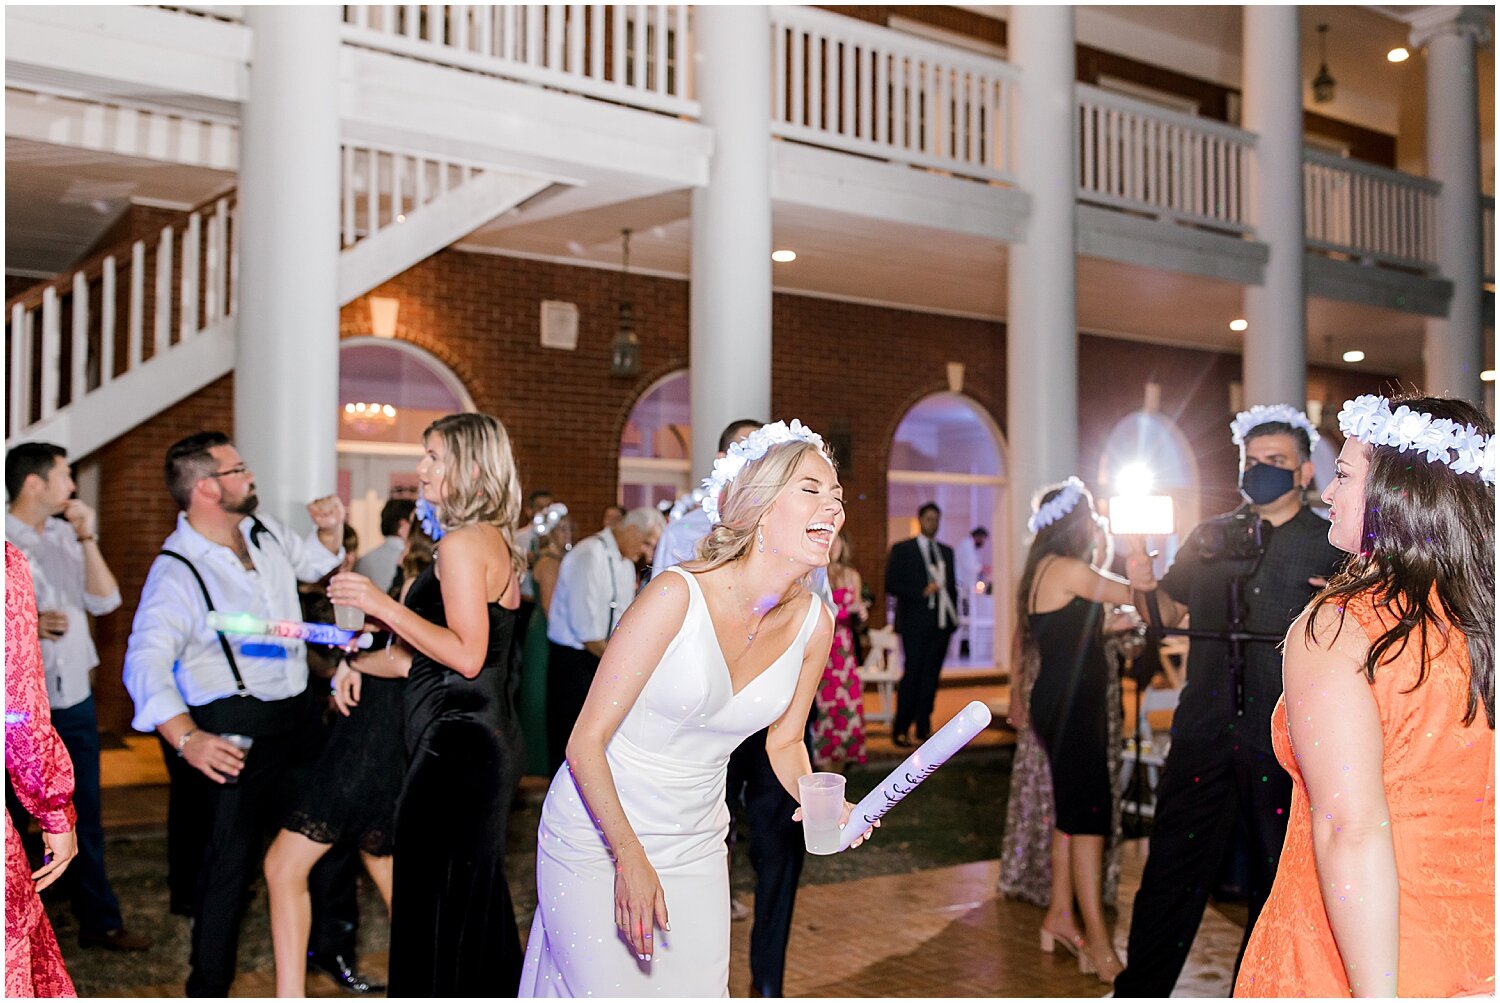  wedding guests dancing 